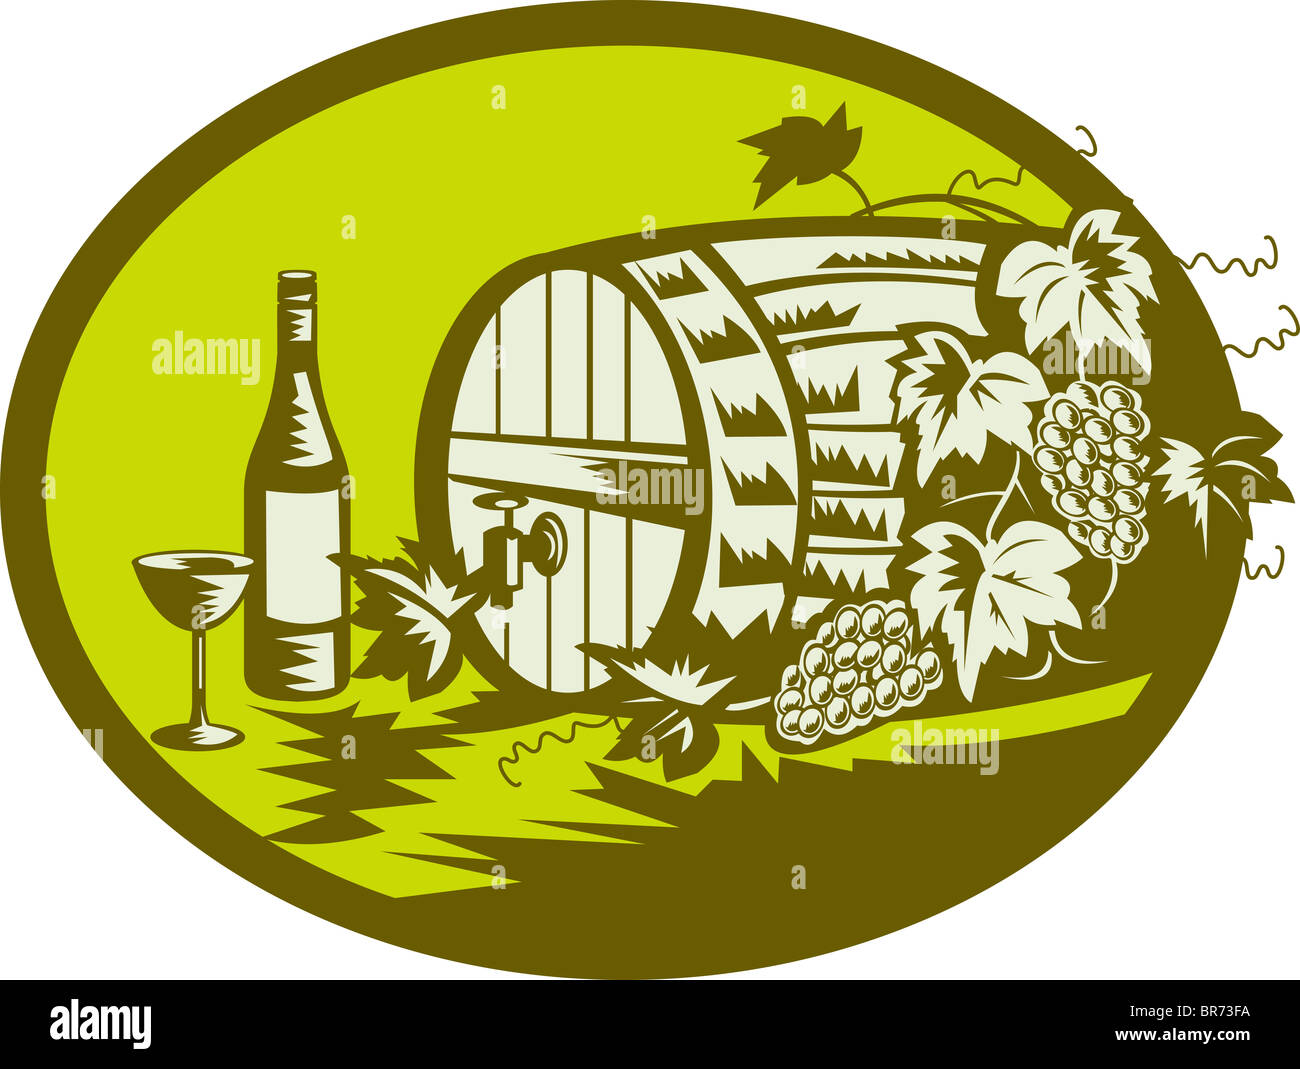 Weinfass oder hölzerne Fass mit Weinreben und Obst und Wein Flasche und Glas getan in Retro-Holzschnitt Stil Abbildung Stockfoto